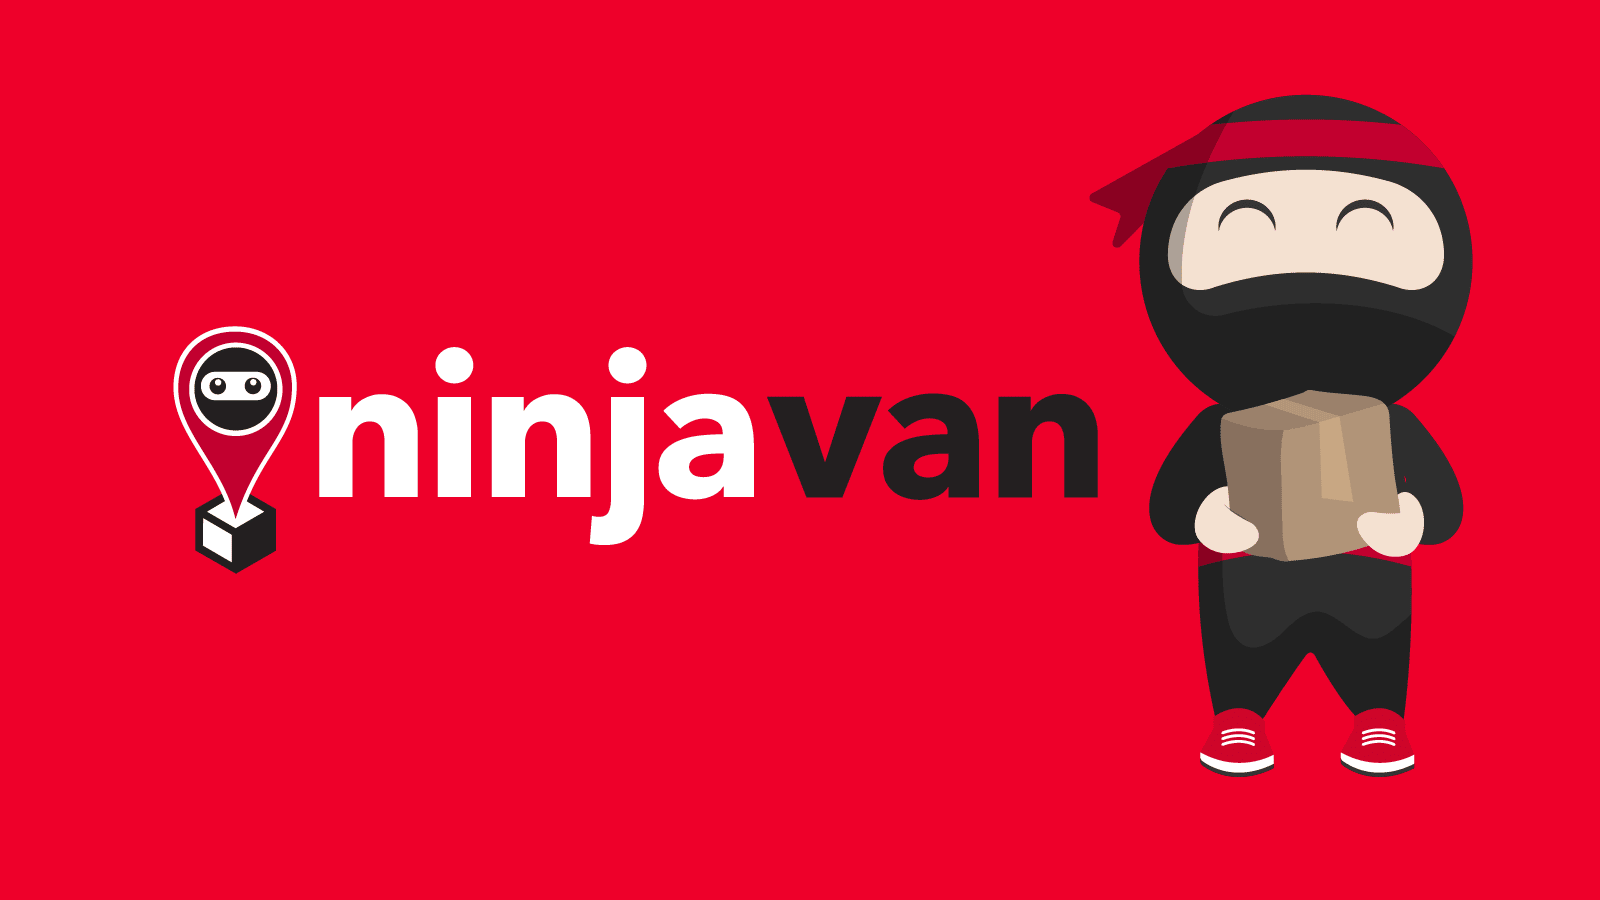 Dịch vụ giao hàng nhanh Ninja Van